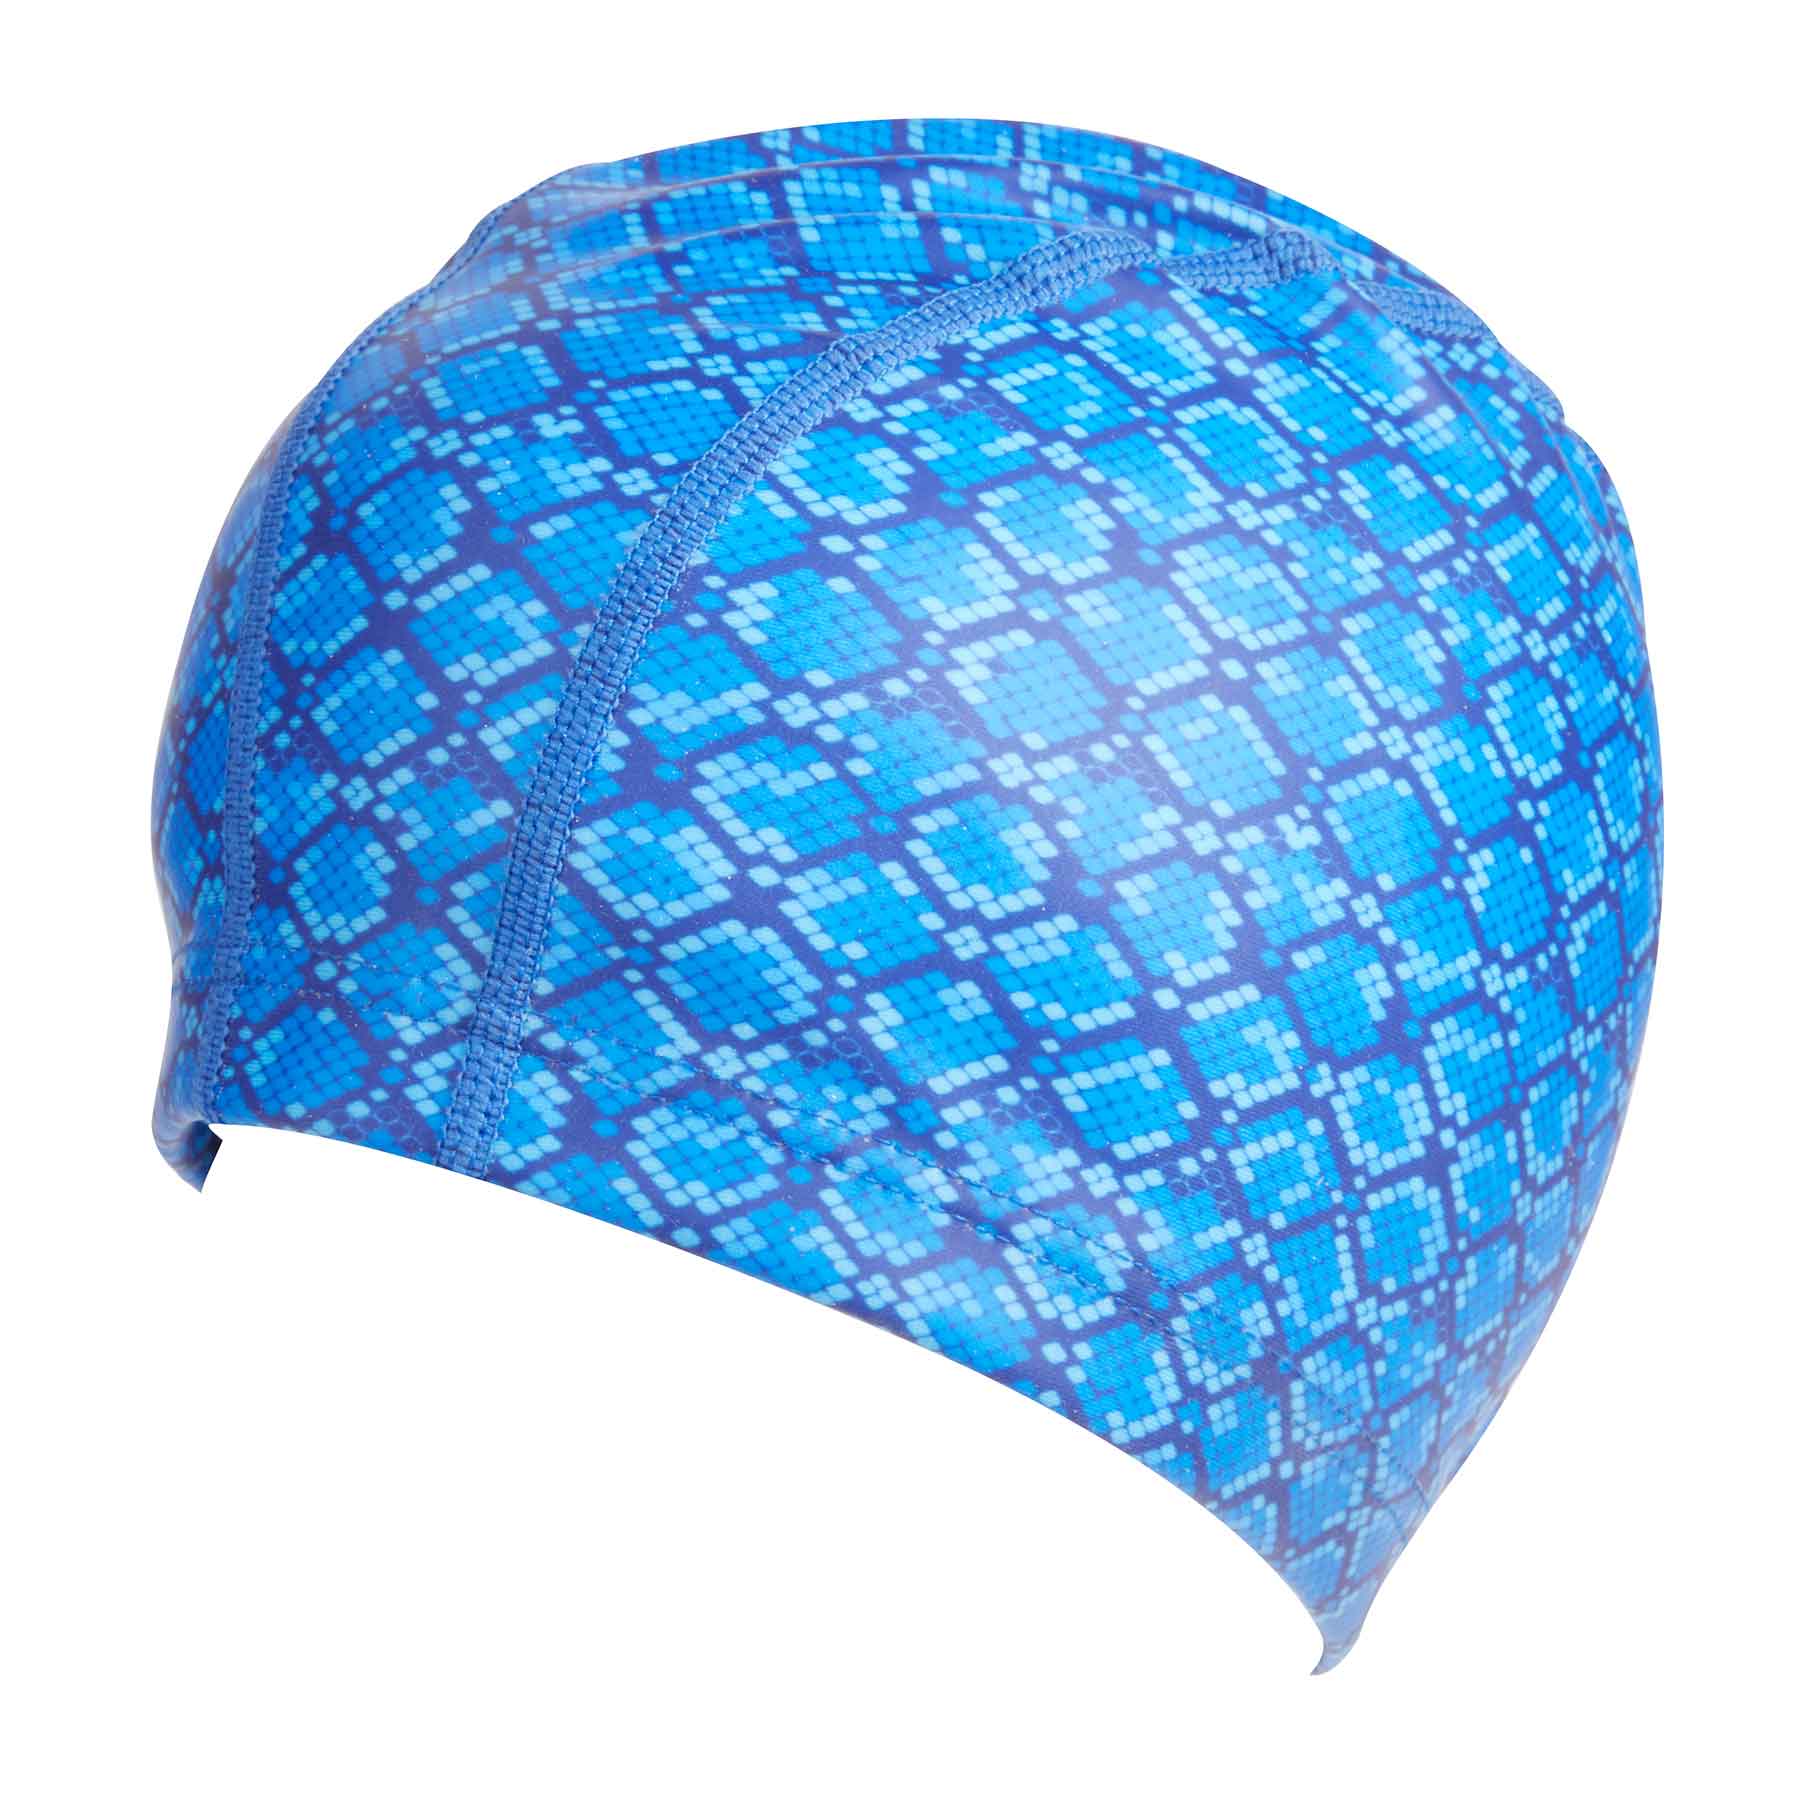 Bling2o Royal Blue Snake Print Star Swim Cap Side